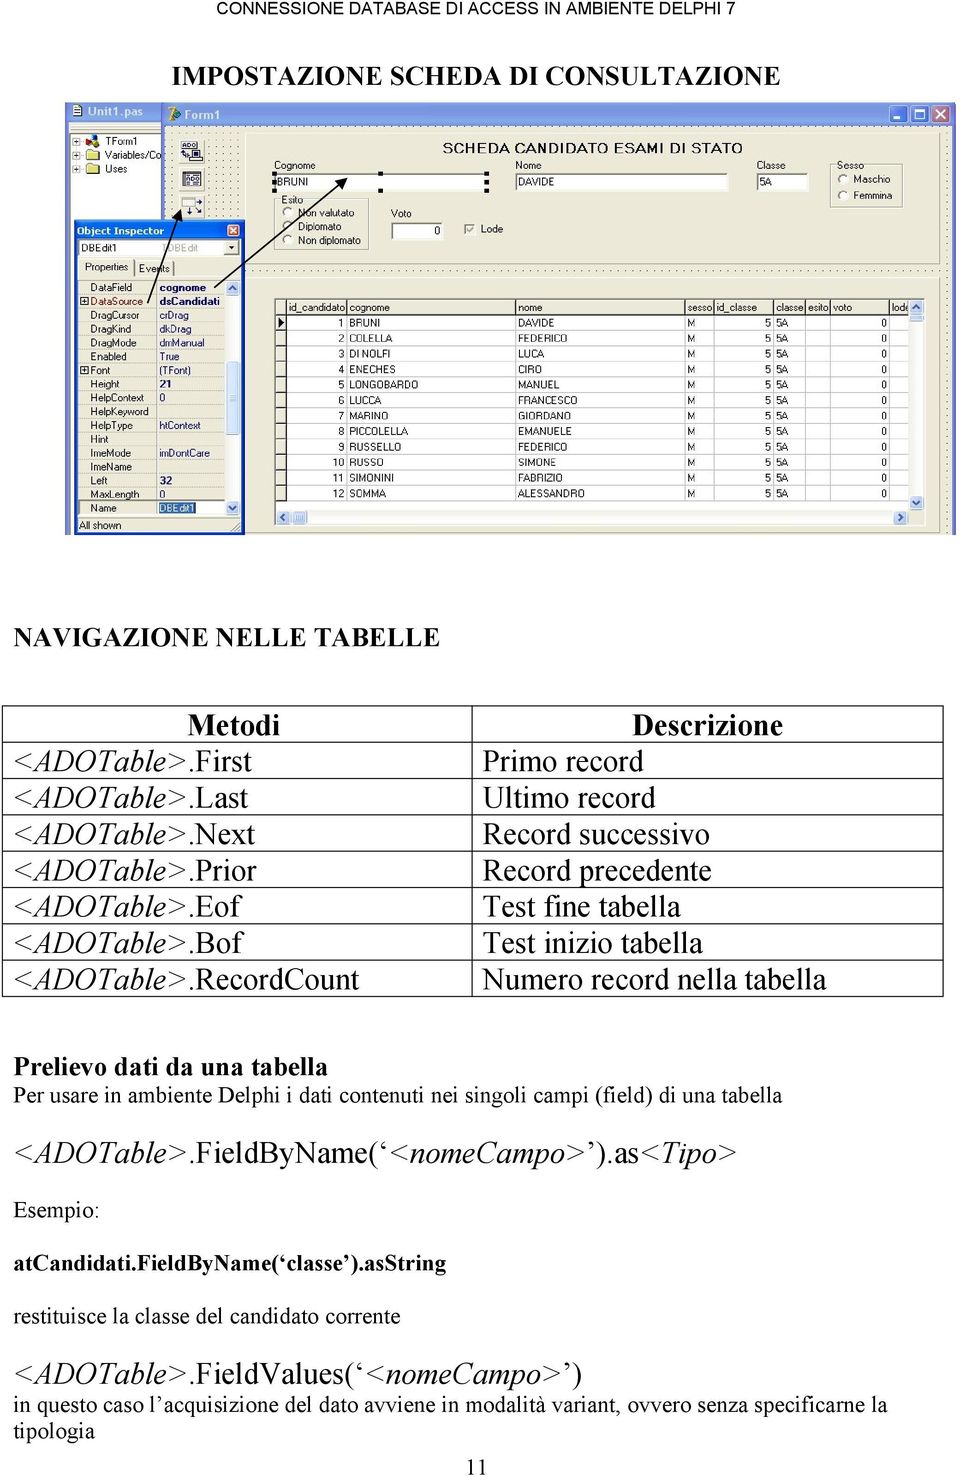 Per usare in ambiente Delphi i dati contenuti nei singoli campi (field) di una tabella <ADOTable>.FieldByName( <nomecampo> ).as<tipo> Esempio: atcandidati.fieldbyname( classe ).